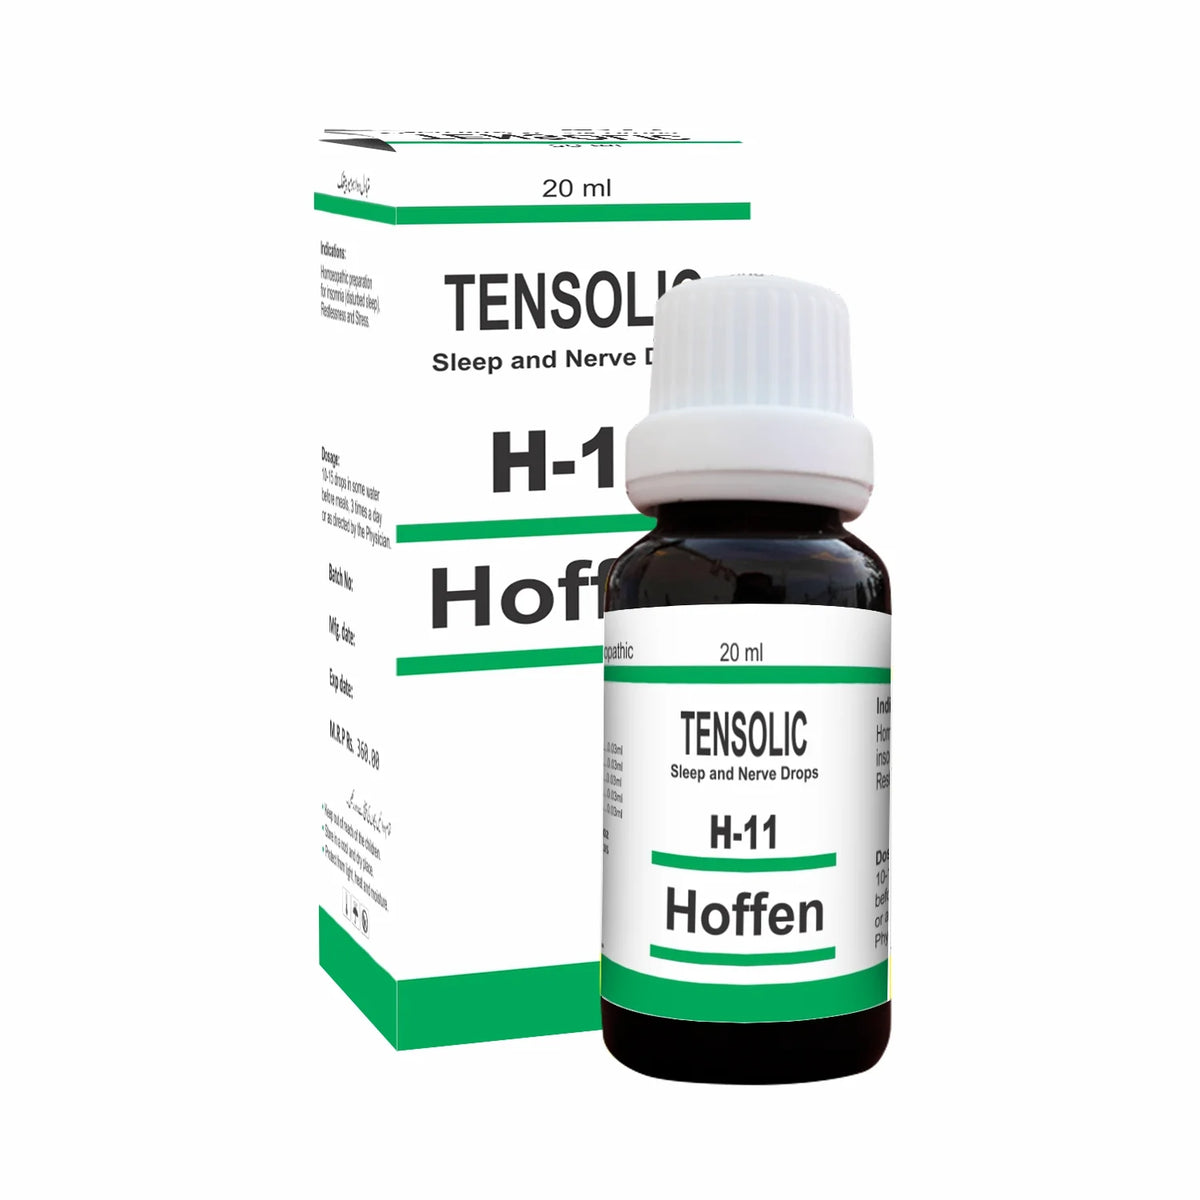 H-11 TENSOLIC Drops